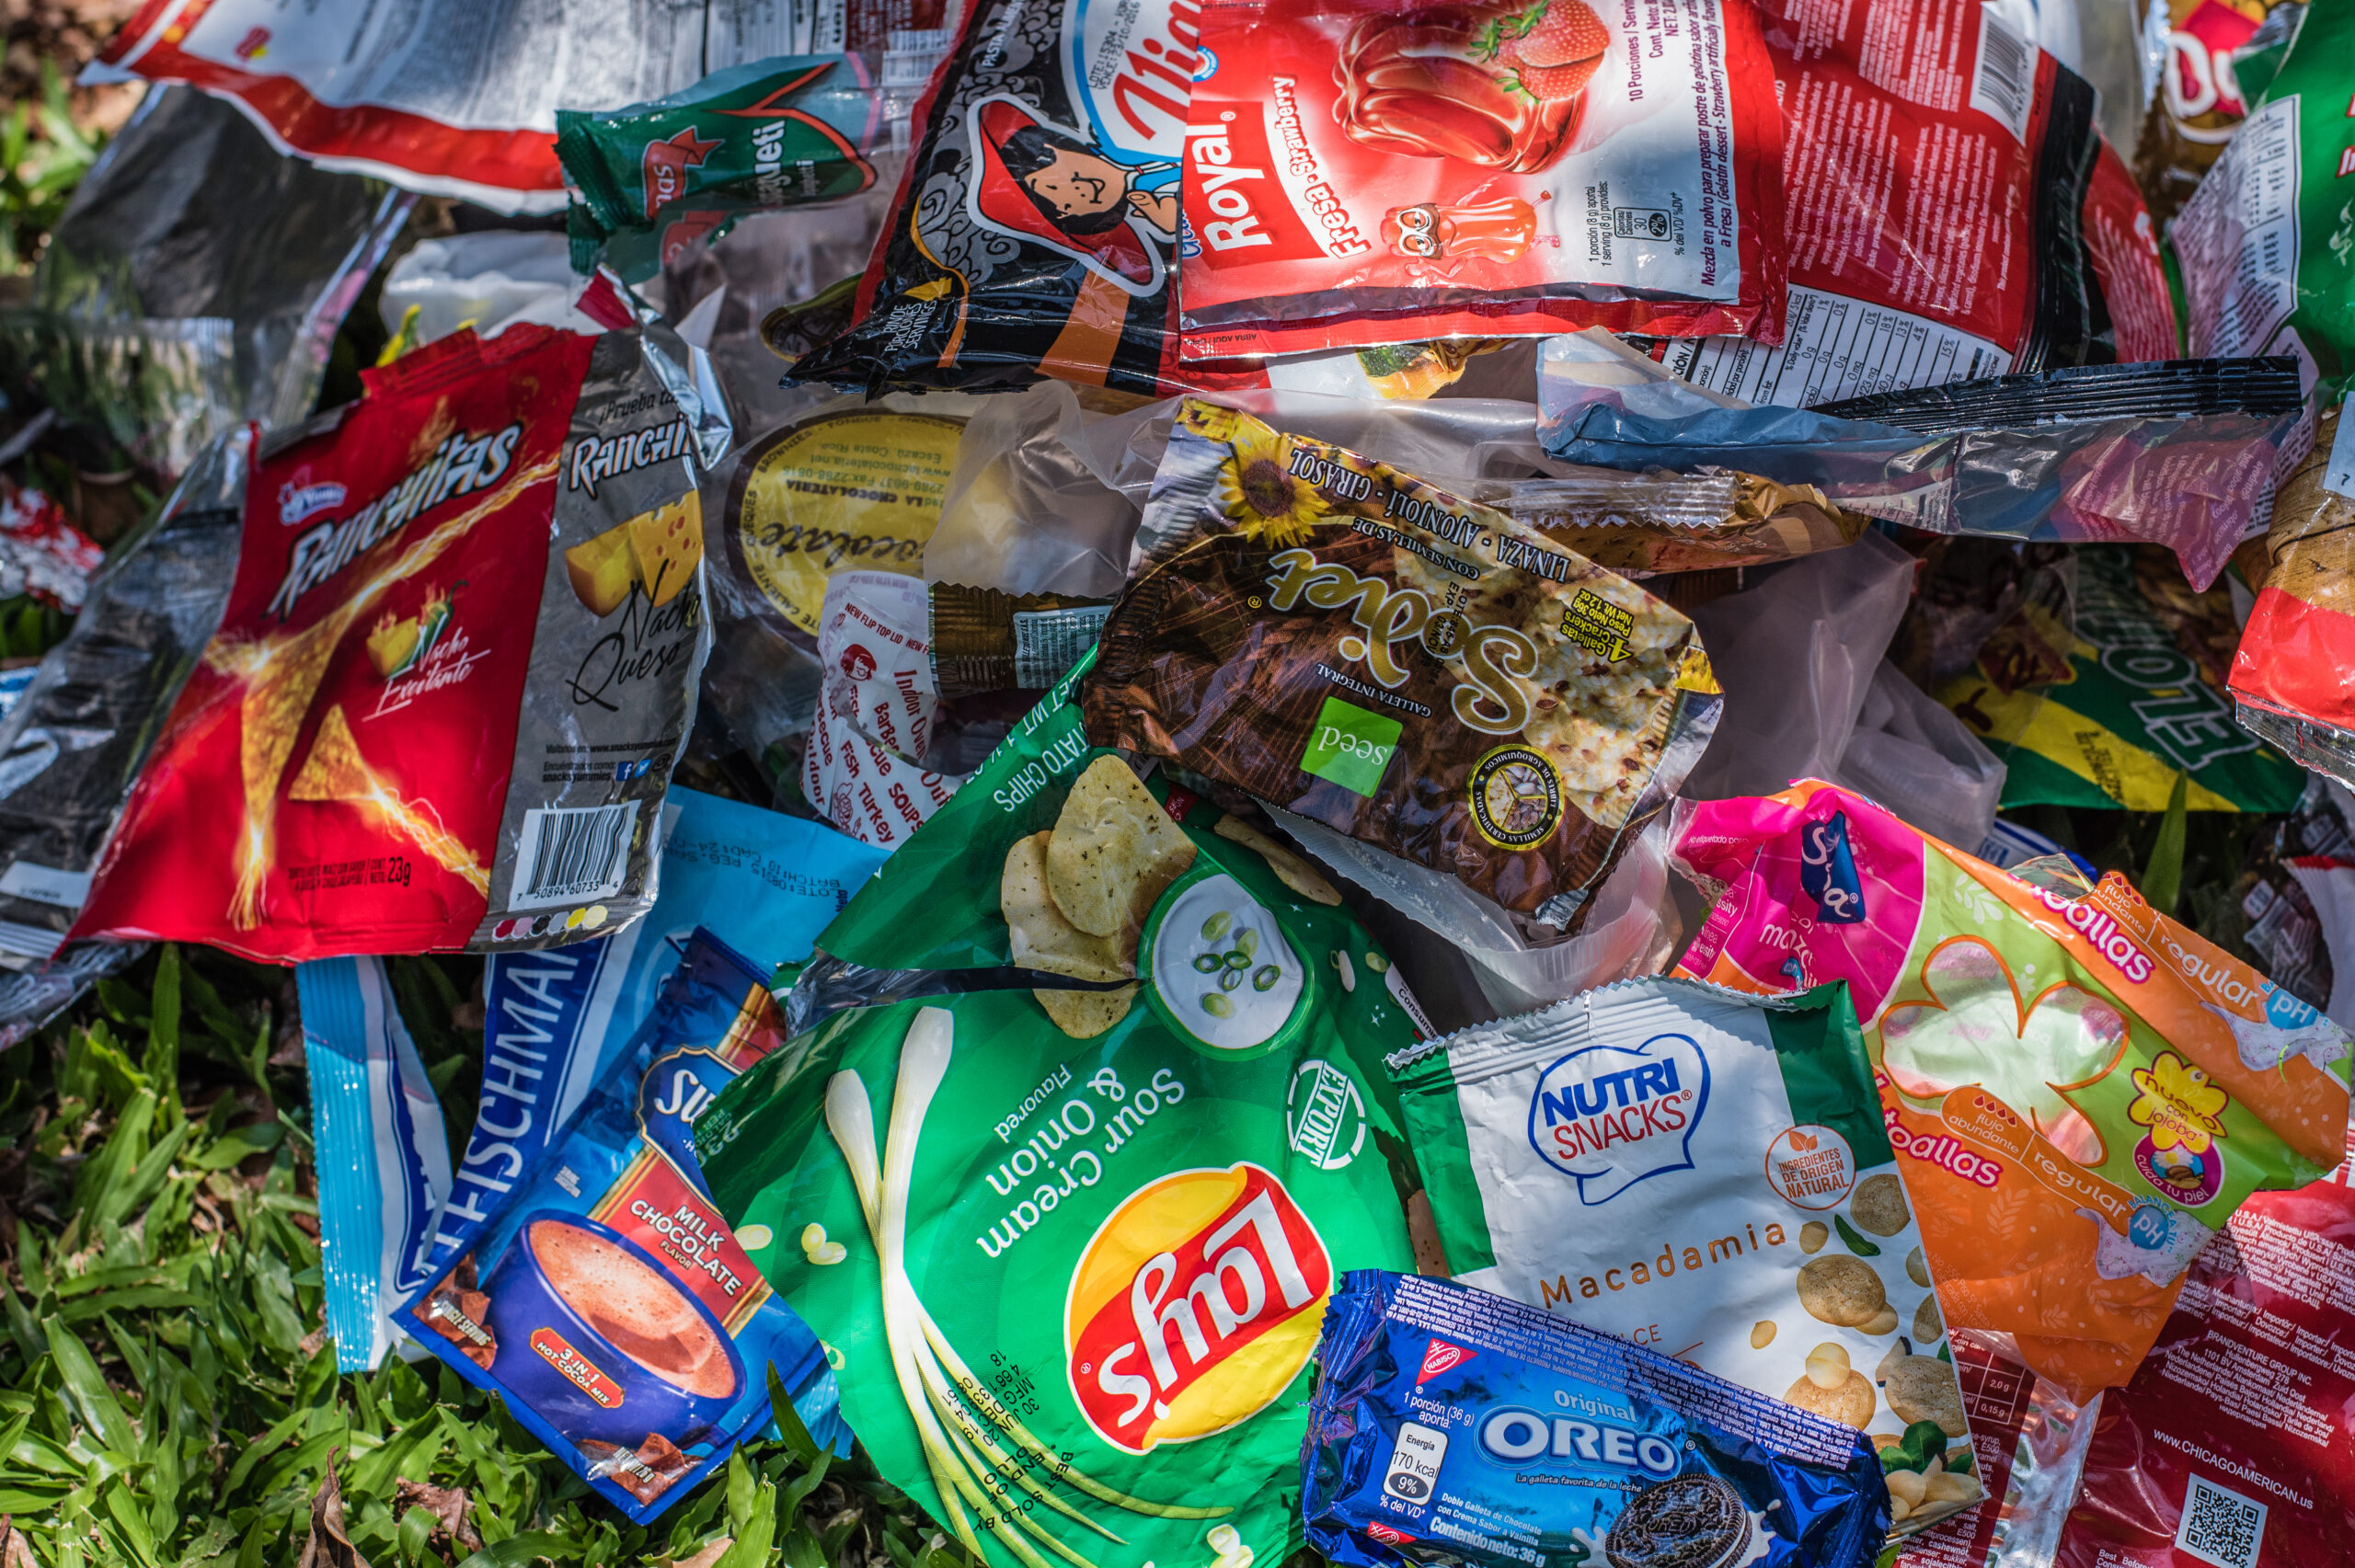 Verpackungscheck der Deutschen Umwelthilfe offenbart umwelt- und klimaschädliche Einweg-Müllflut bei Supermärkten und Discountern